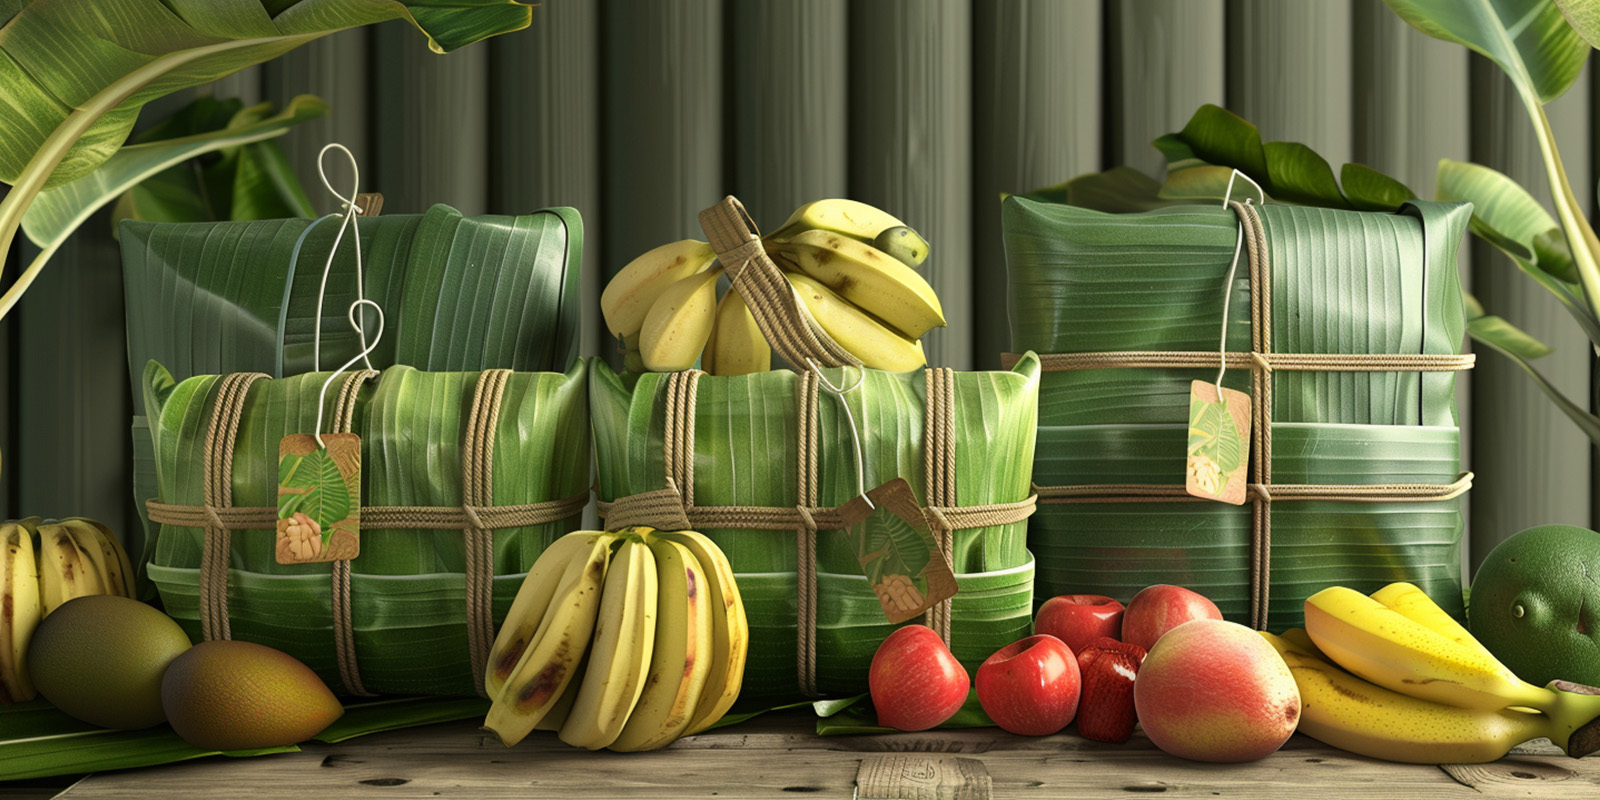 Frutas empaquetadas con hojas de plátano, etiquetas de papel reciclado cuelgan de cada packaging.